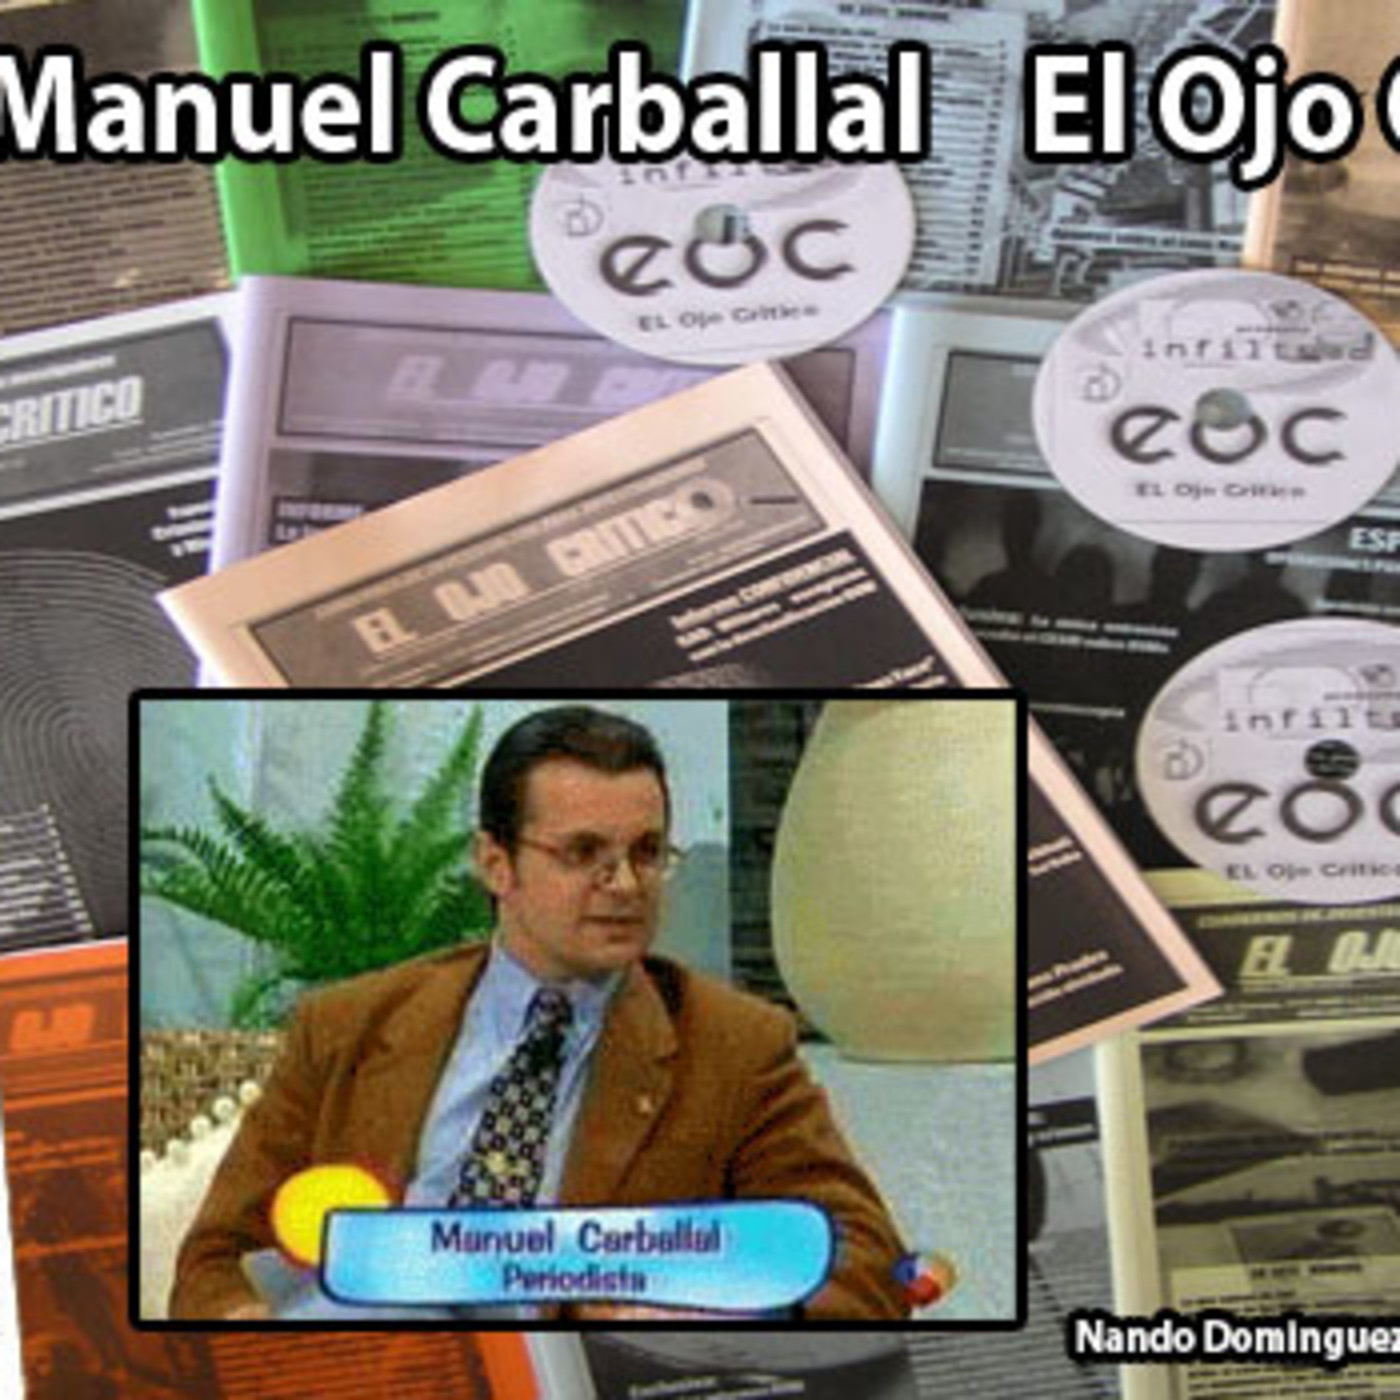 La Puerta Al Universo - Manuel Carballal El Ojo Critico Cuadernos de Investigación